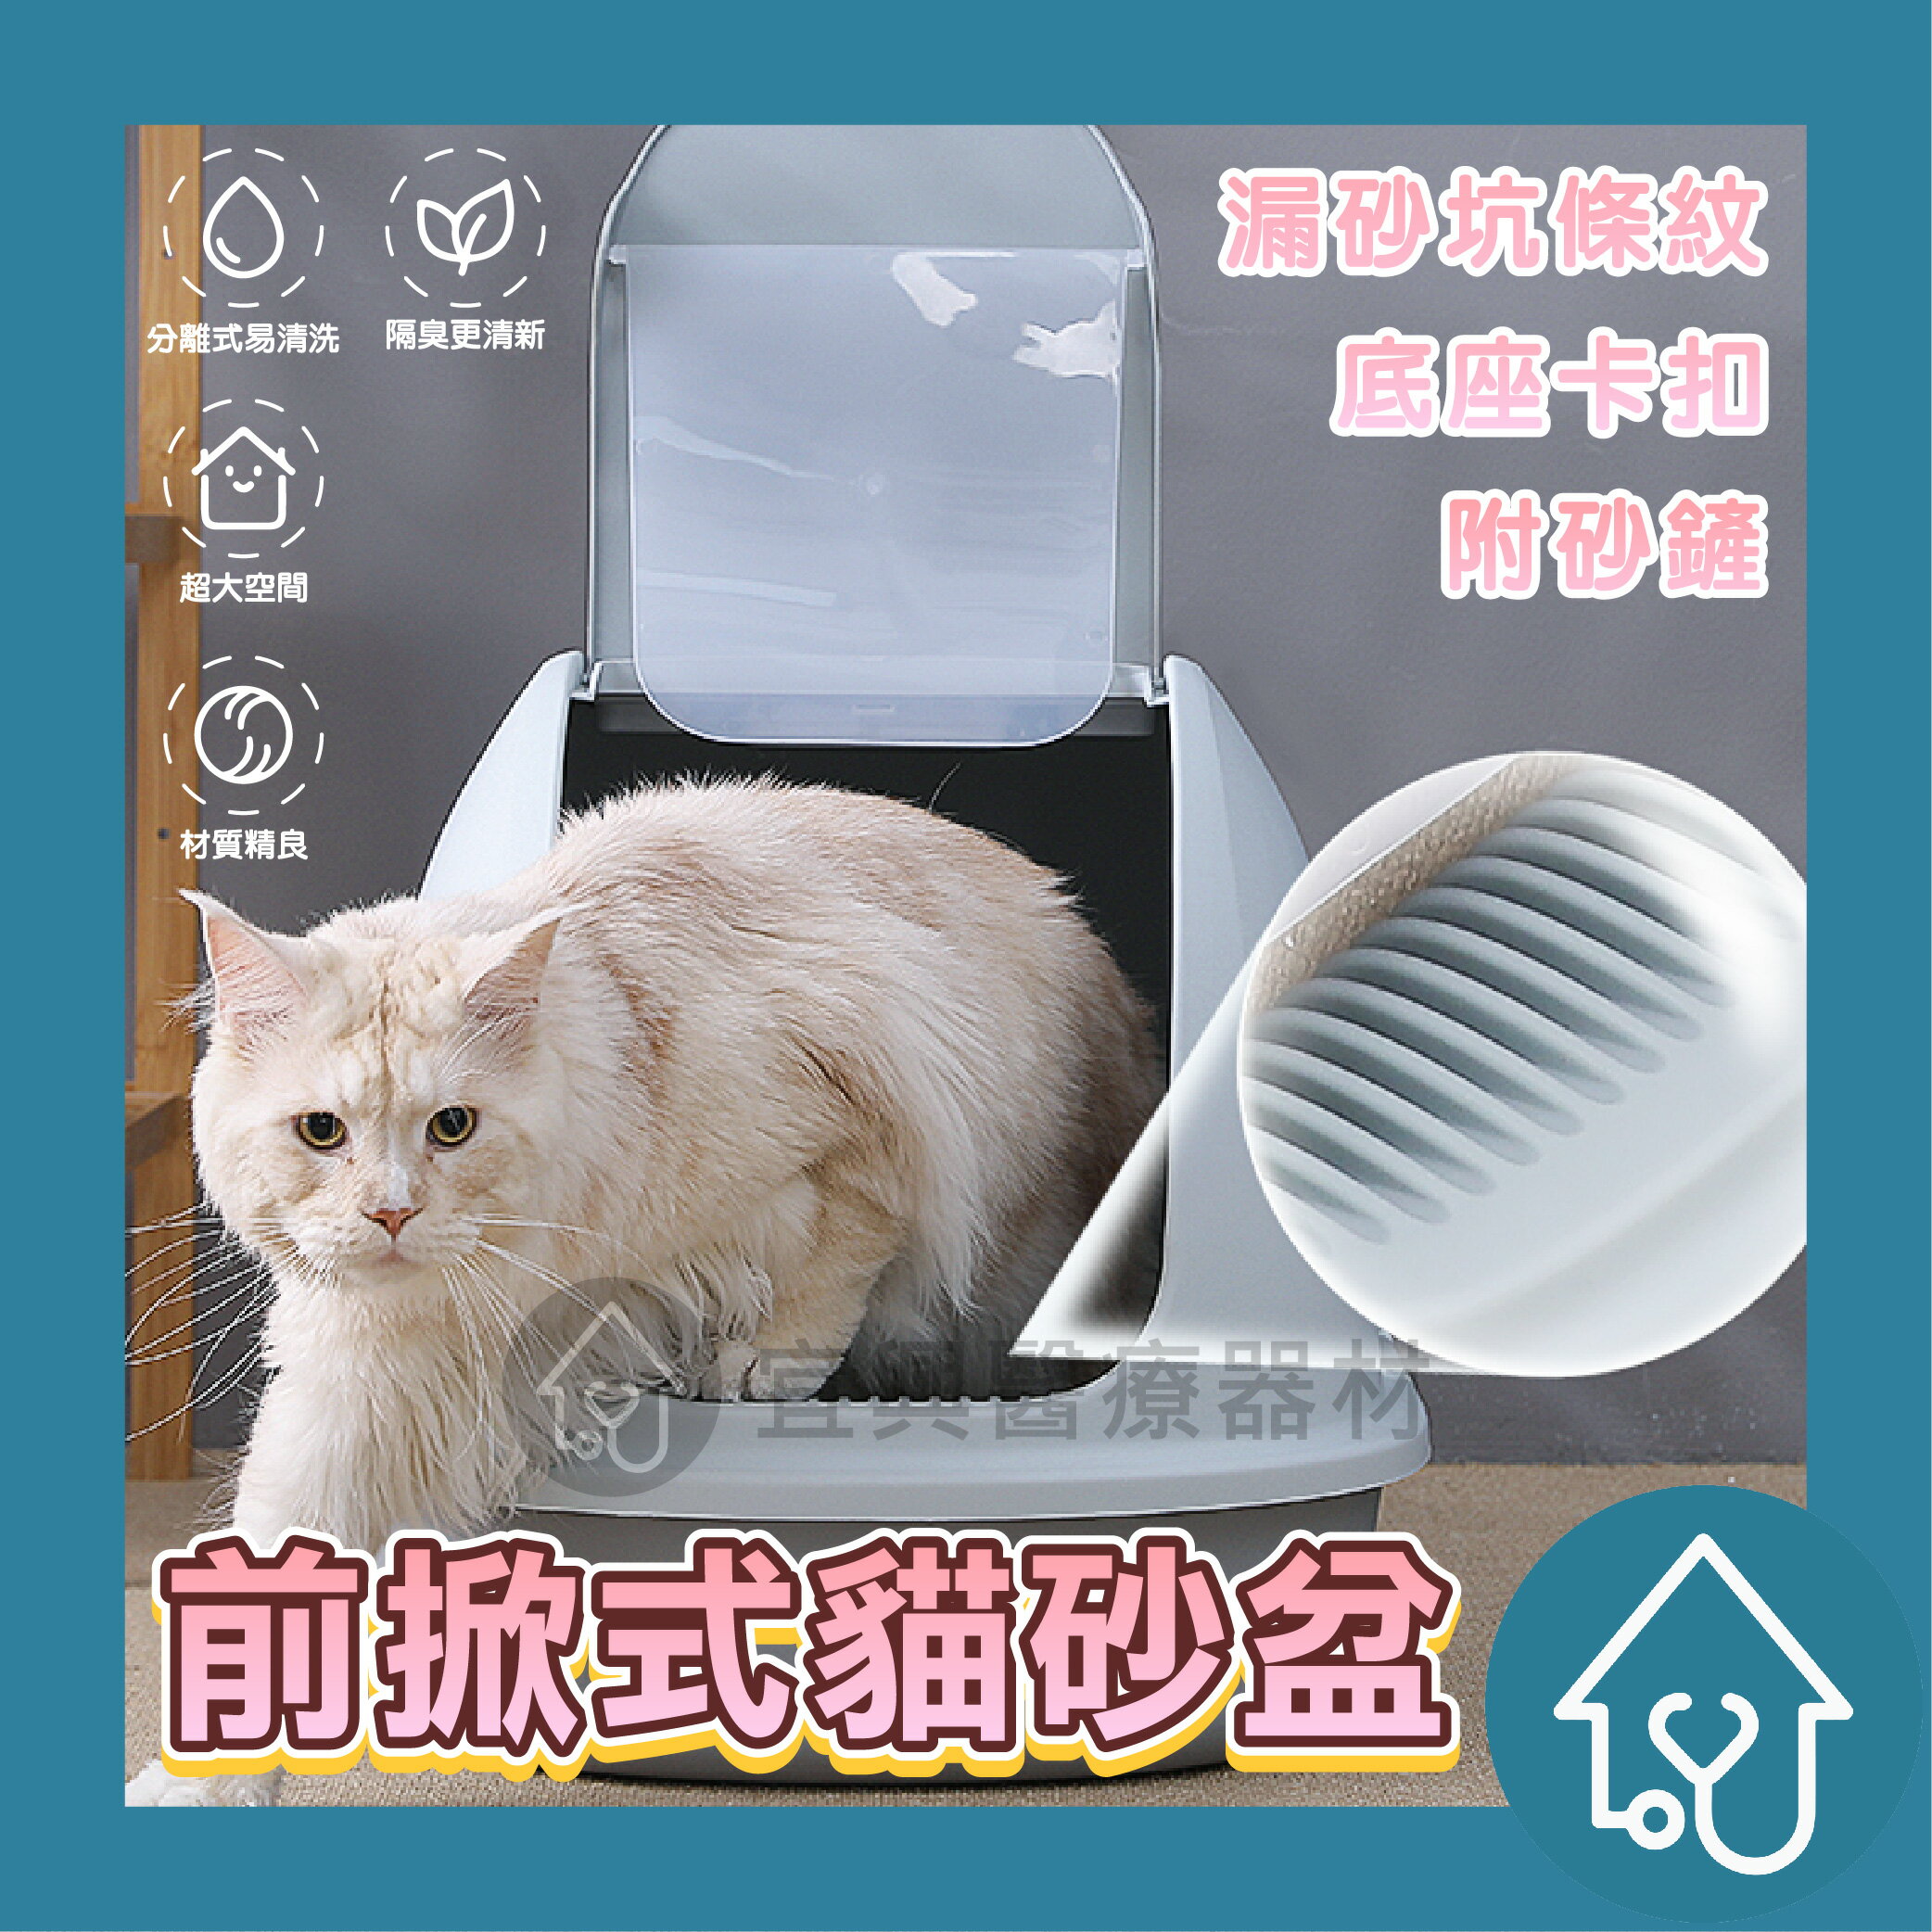 前掀式貓砂盆 三色可選 貓便盆 貓廁所 貓砂盆 貓用品 寵物用品 大空間